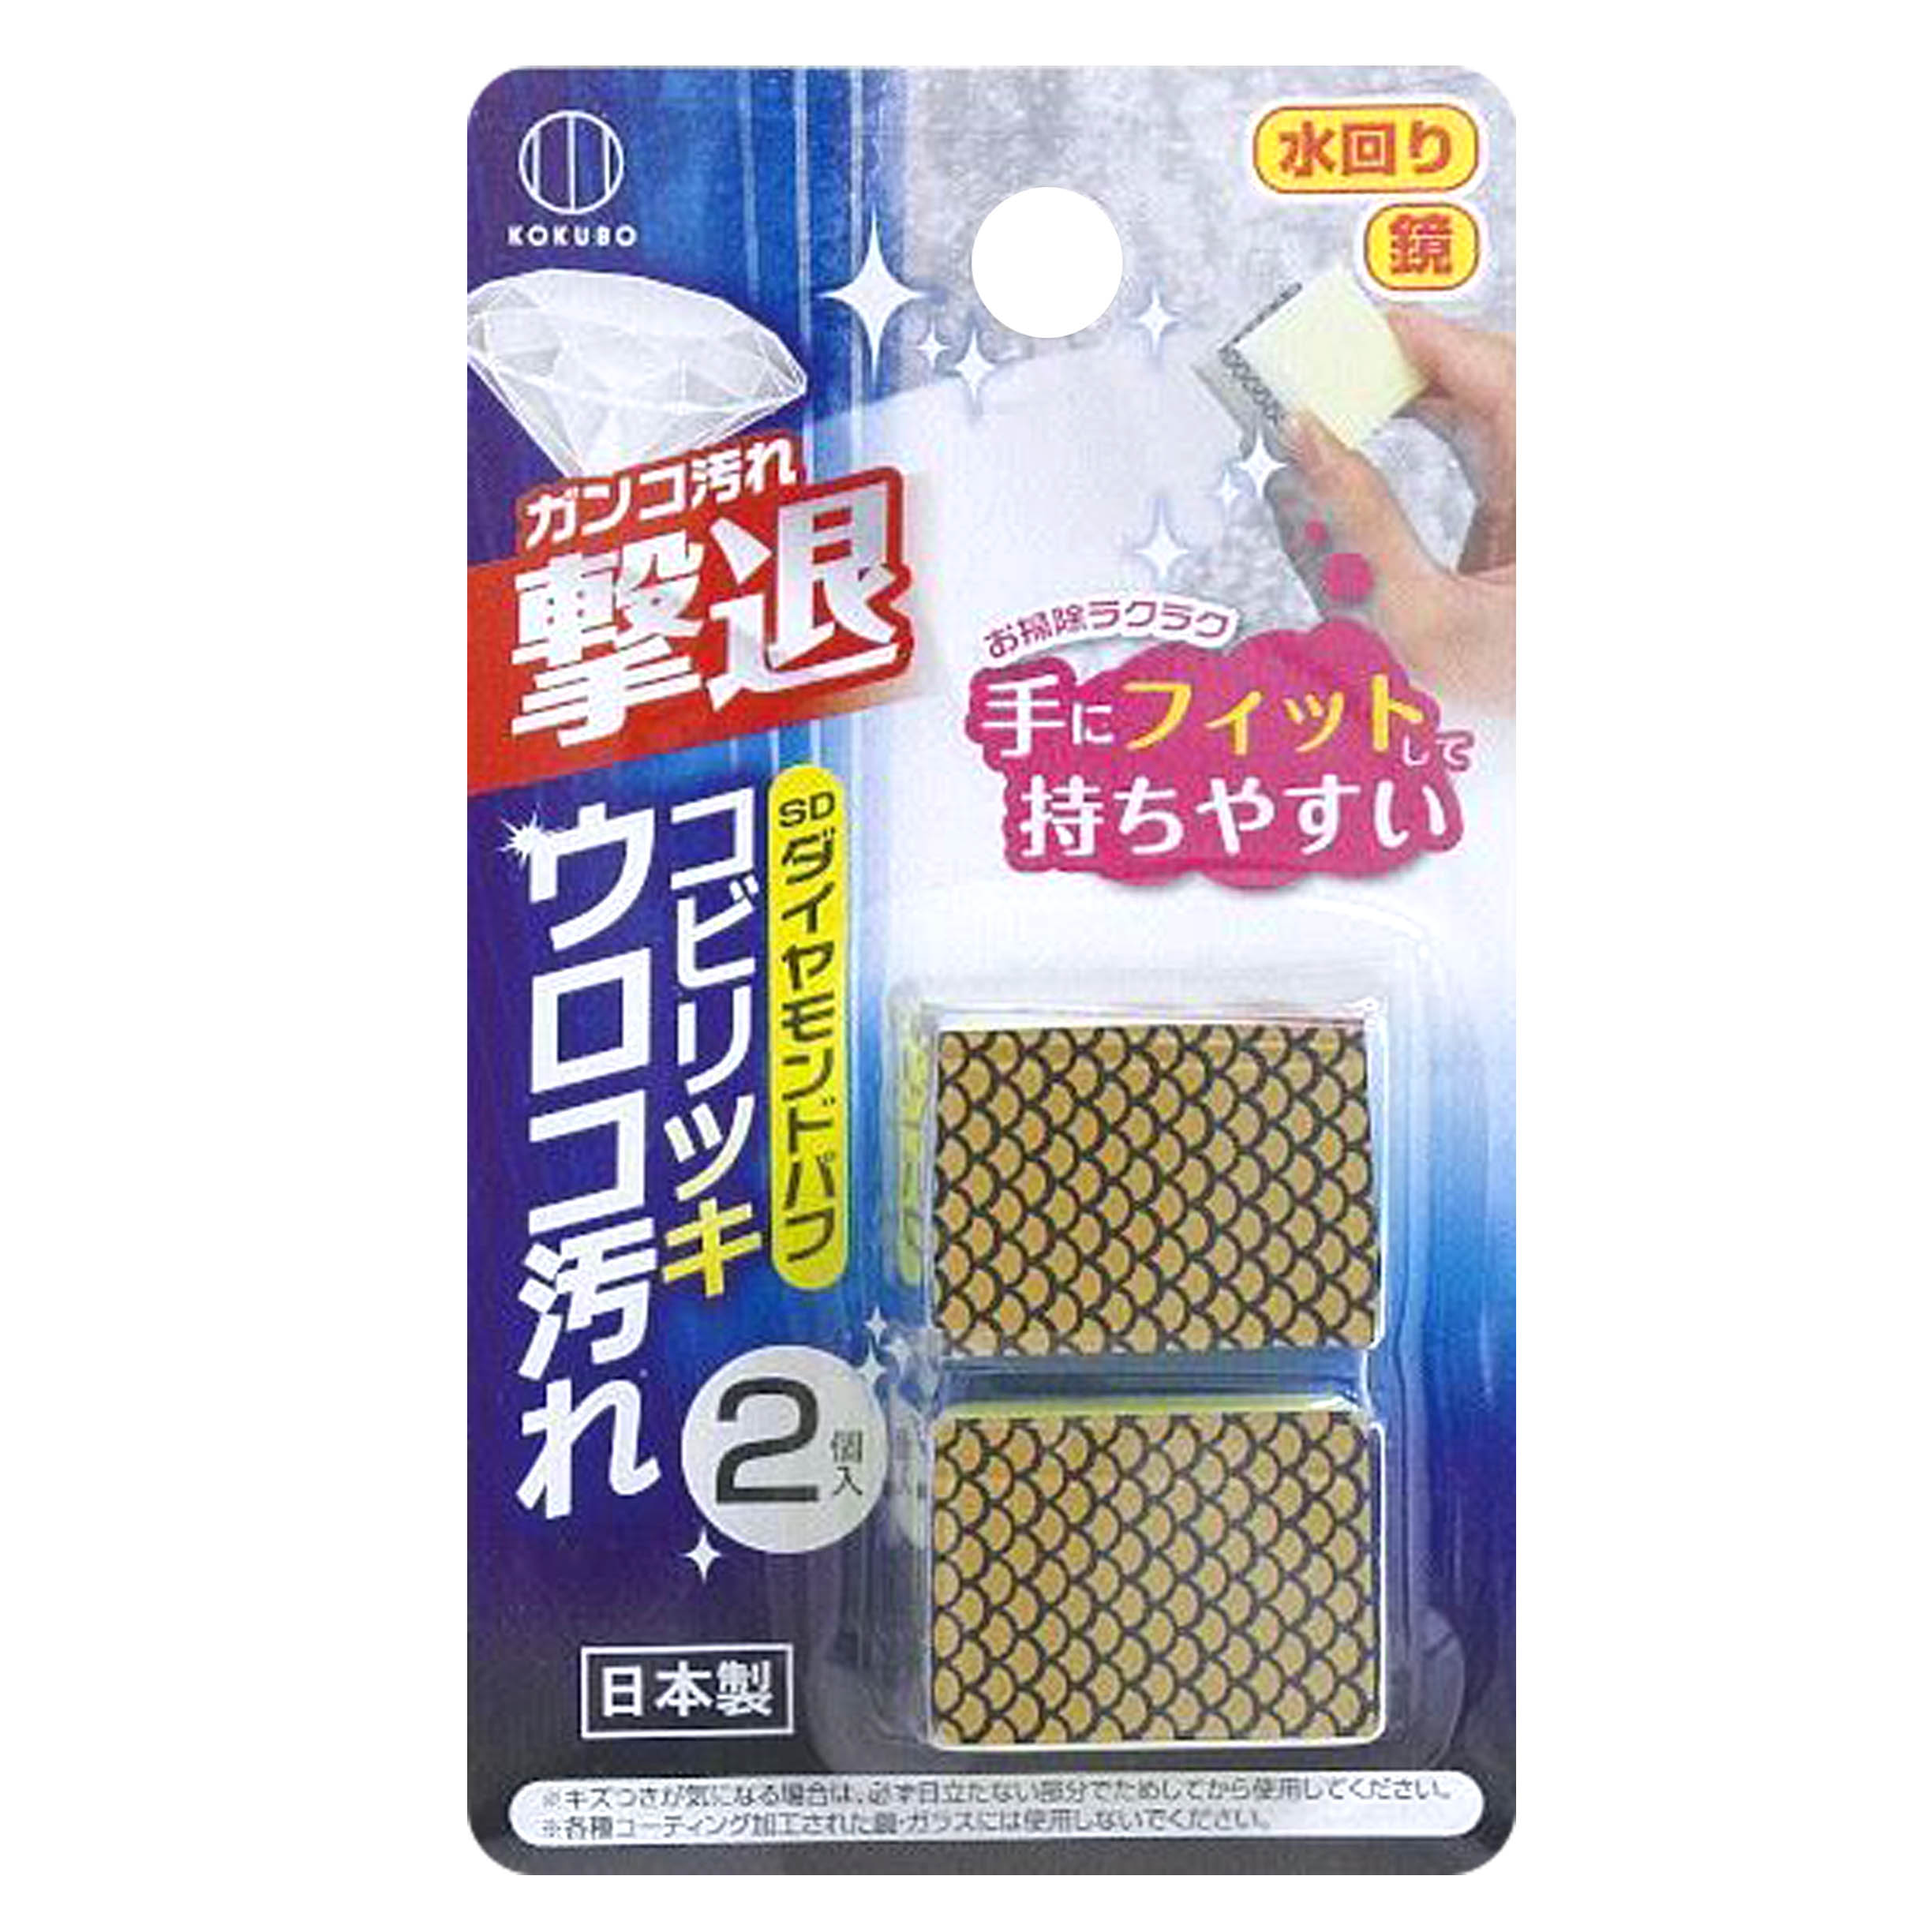 除垢拋光海綿-3711 小久保工業所 KOKUBO 日本製造進口